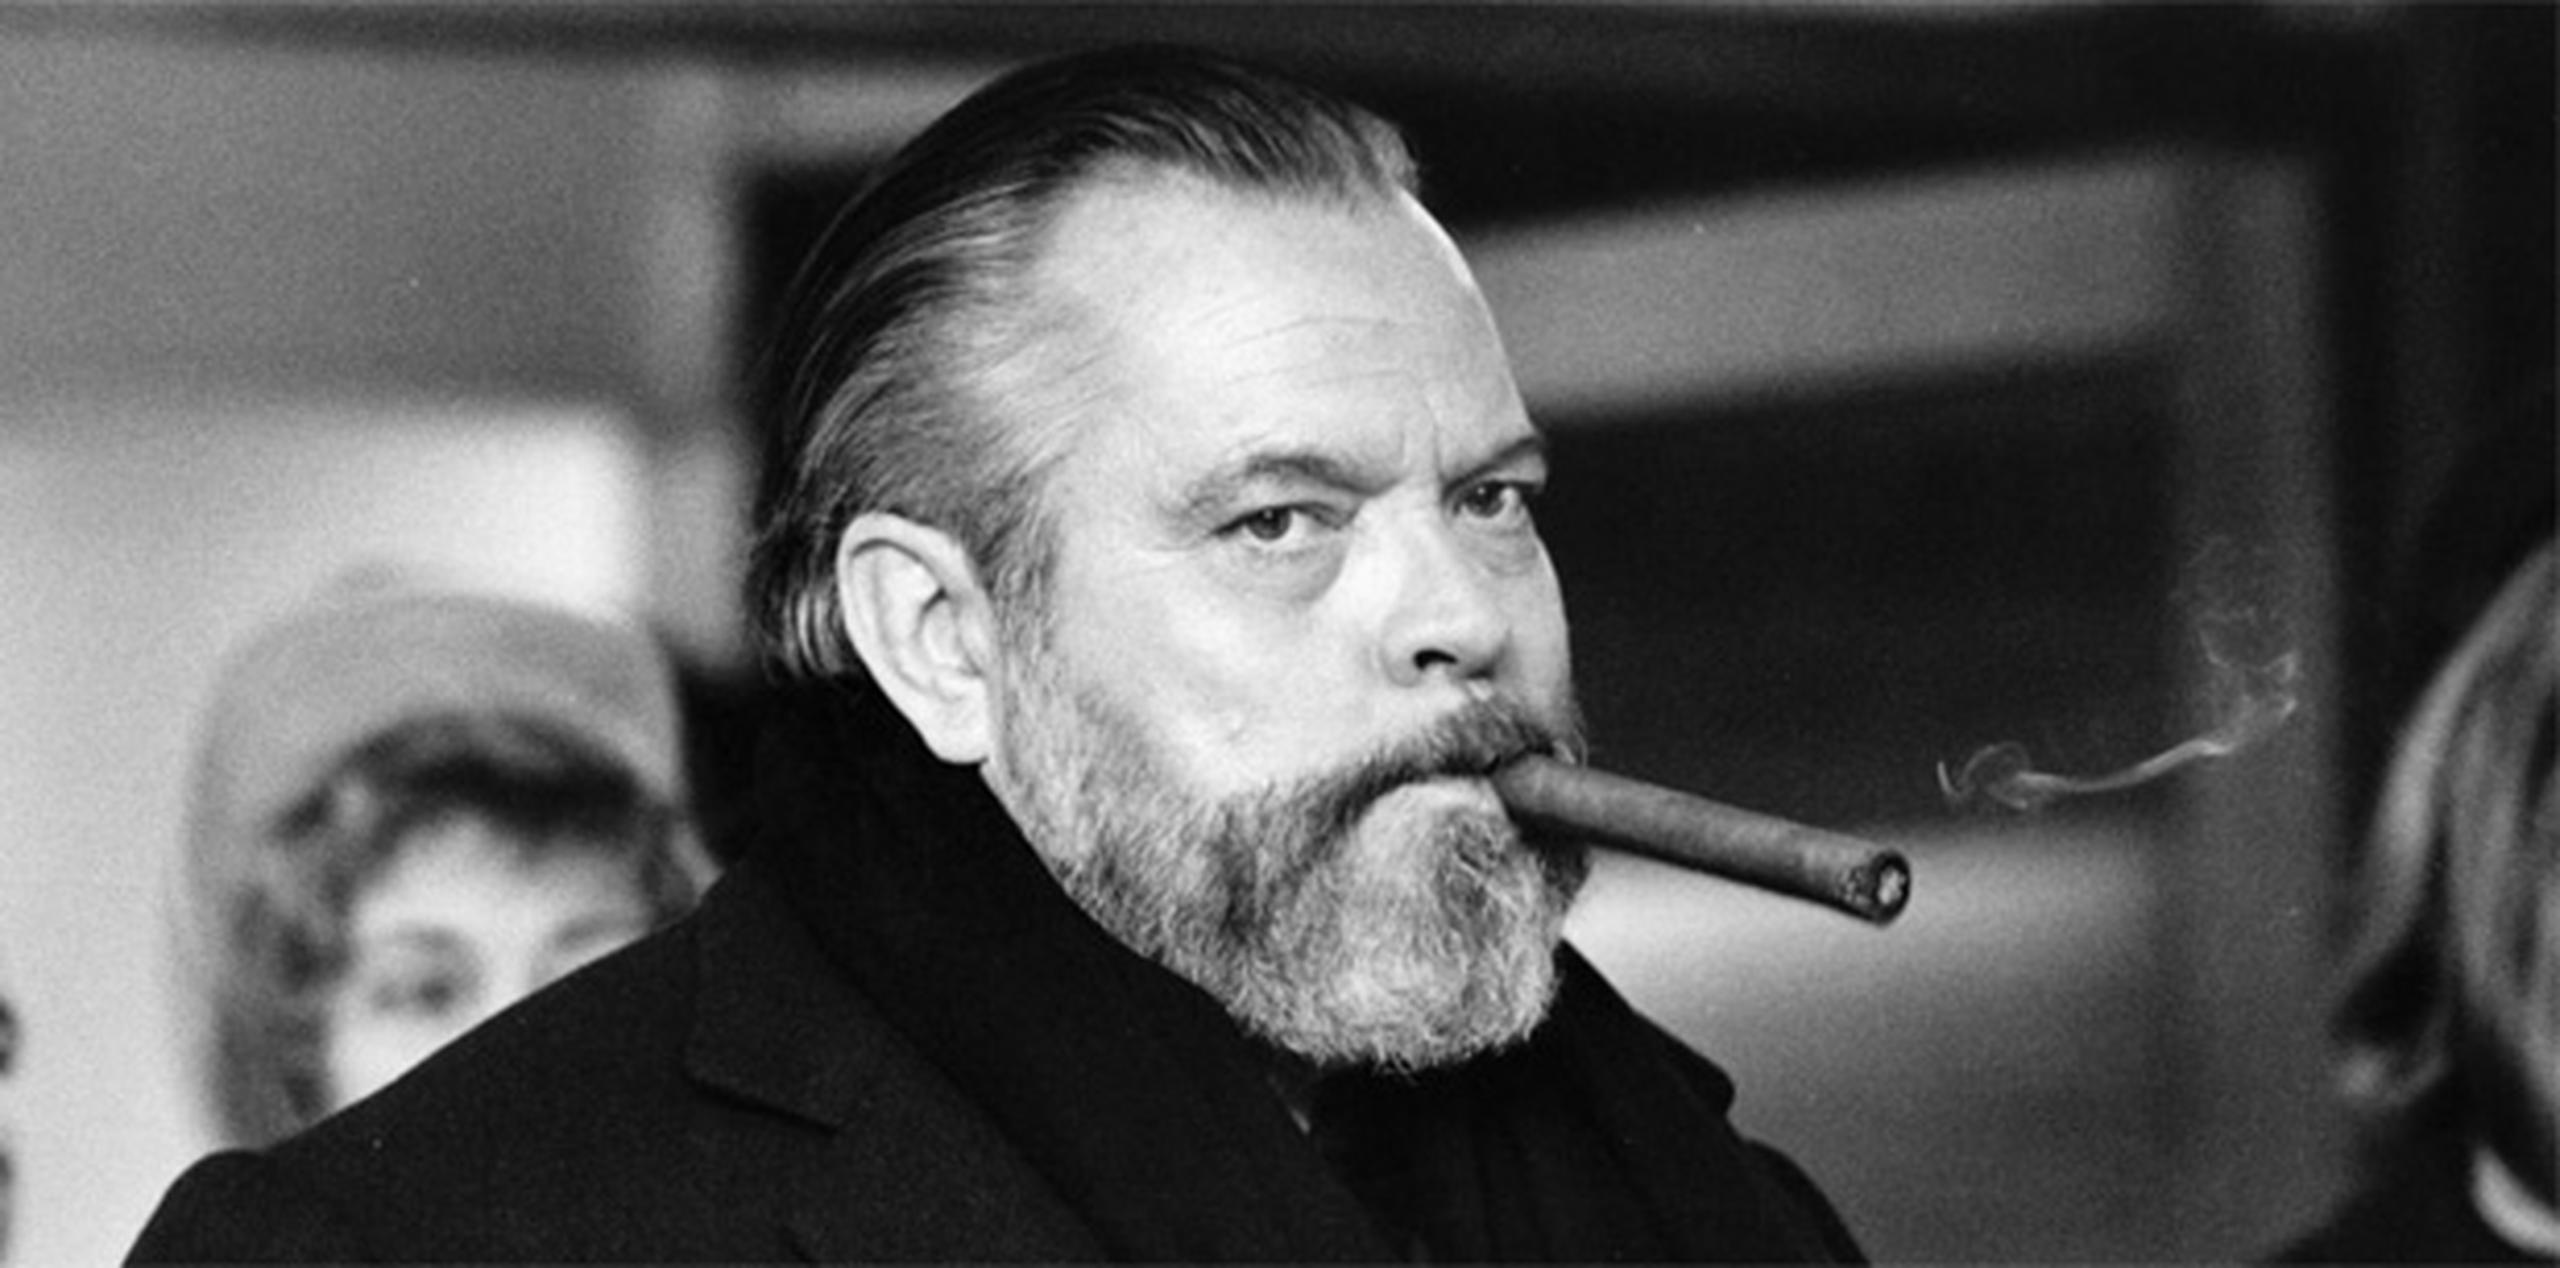 La filmografía de Welles incluye títulos como "The Lady from Shanghai" (1947), "Macbeth" (1948), "Touch of Evil" (1958), "Chimes at Midnight" (1965) y, por supusto, "Citizen Kane" (1941).